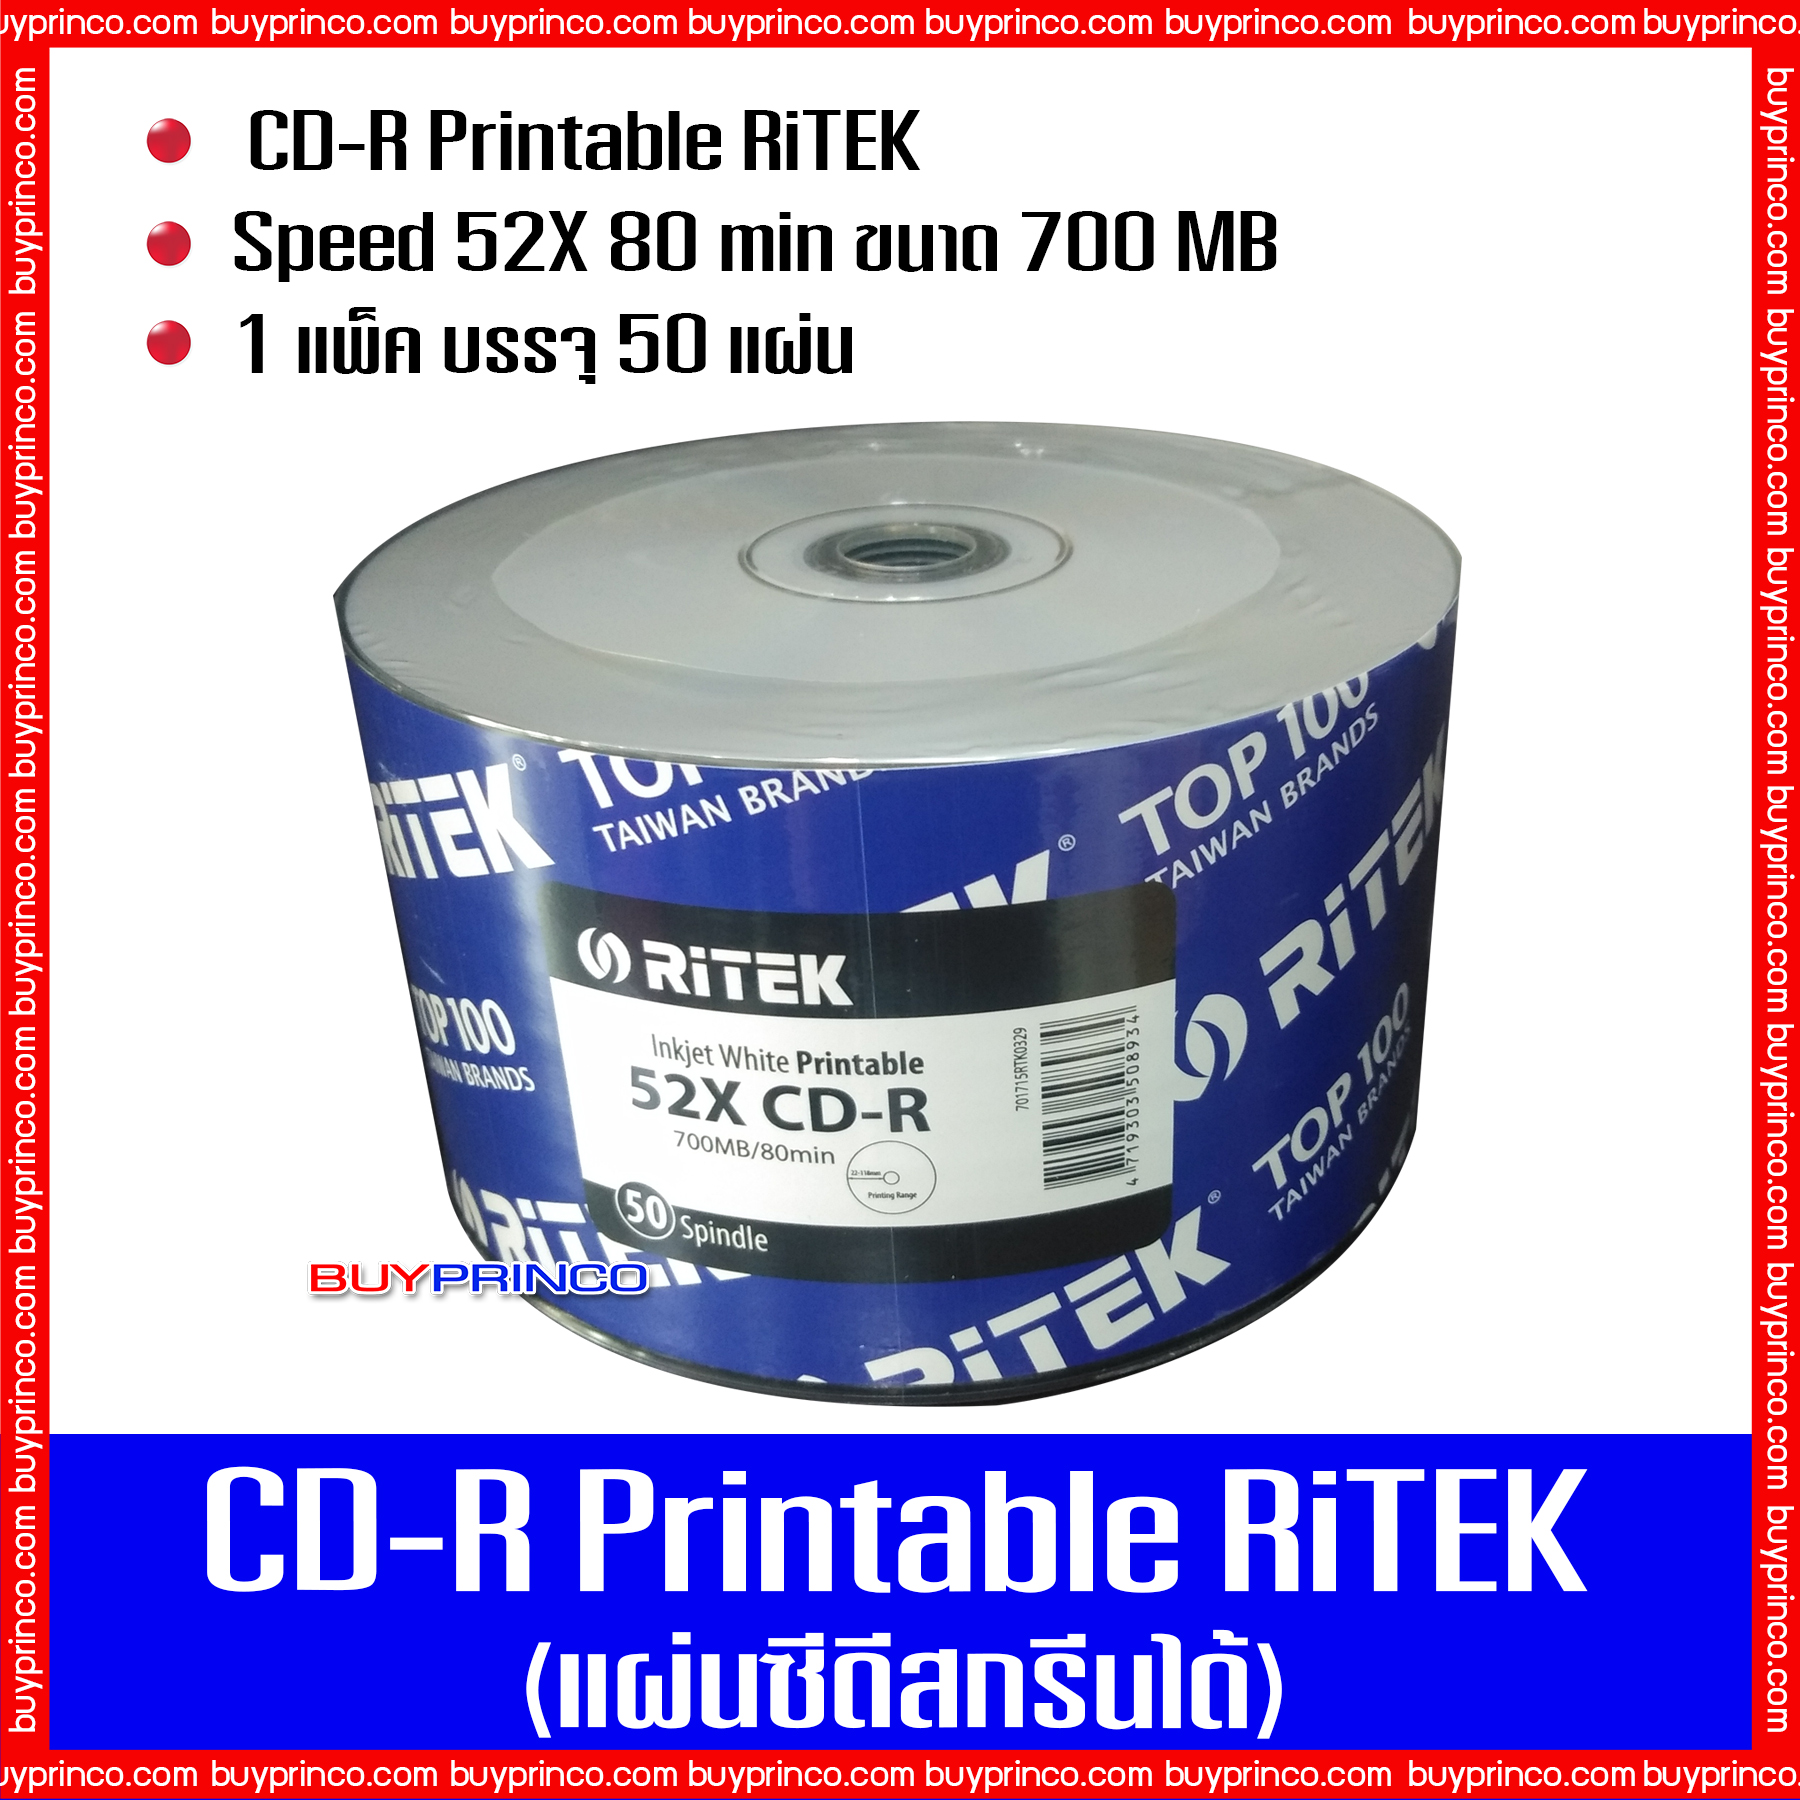 แผ่นซีดี ไรเทค CD R Ritek Printable (แผ่นซีดีสกรีนได้)